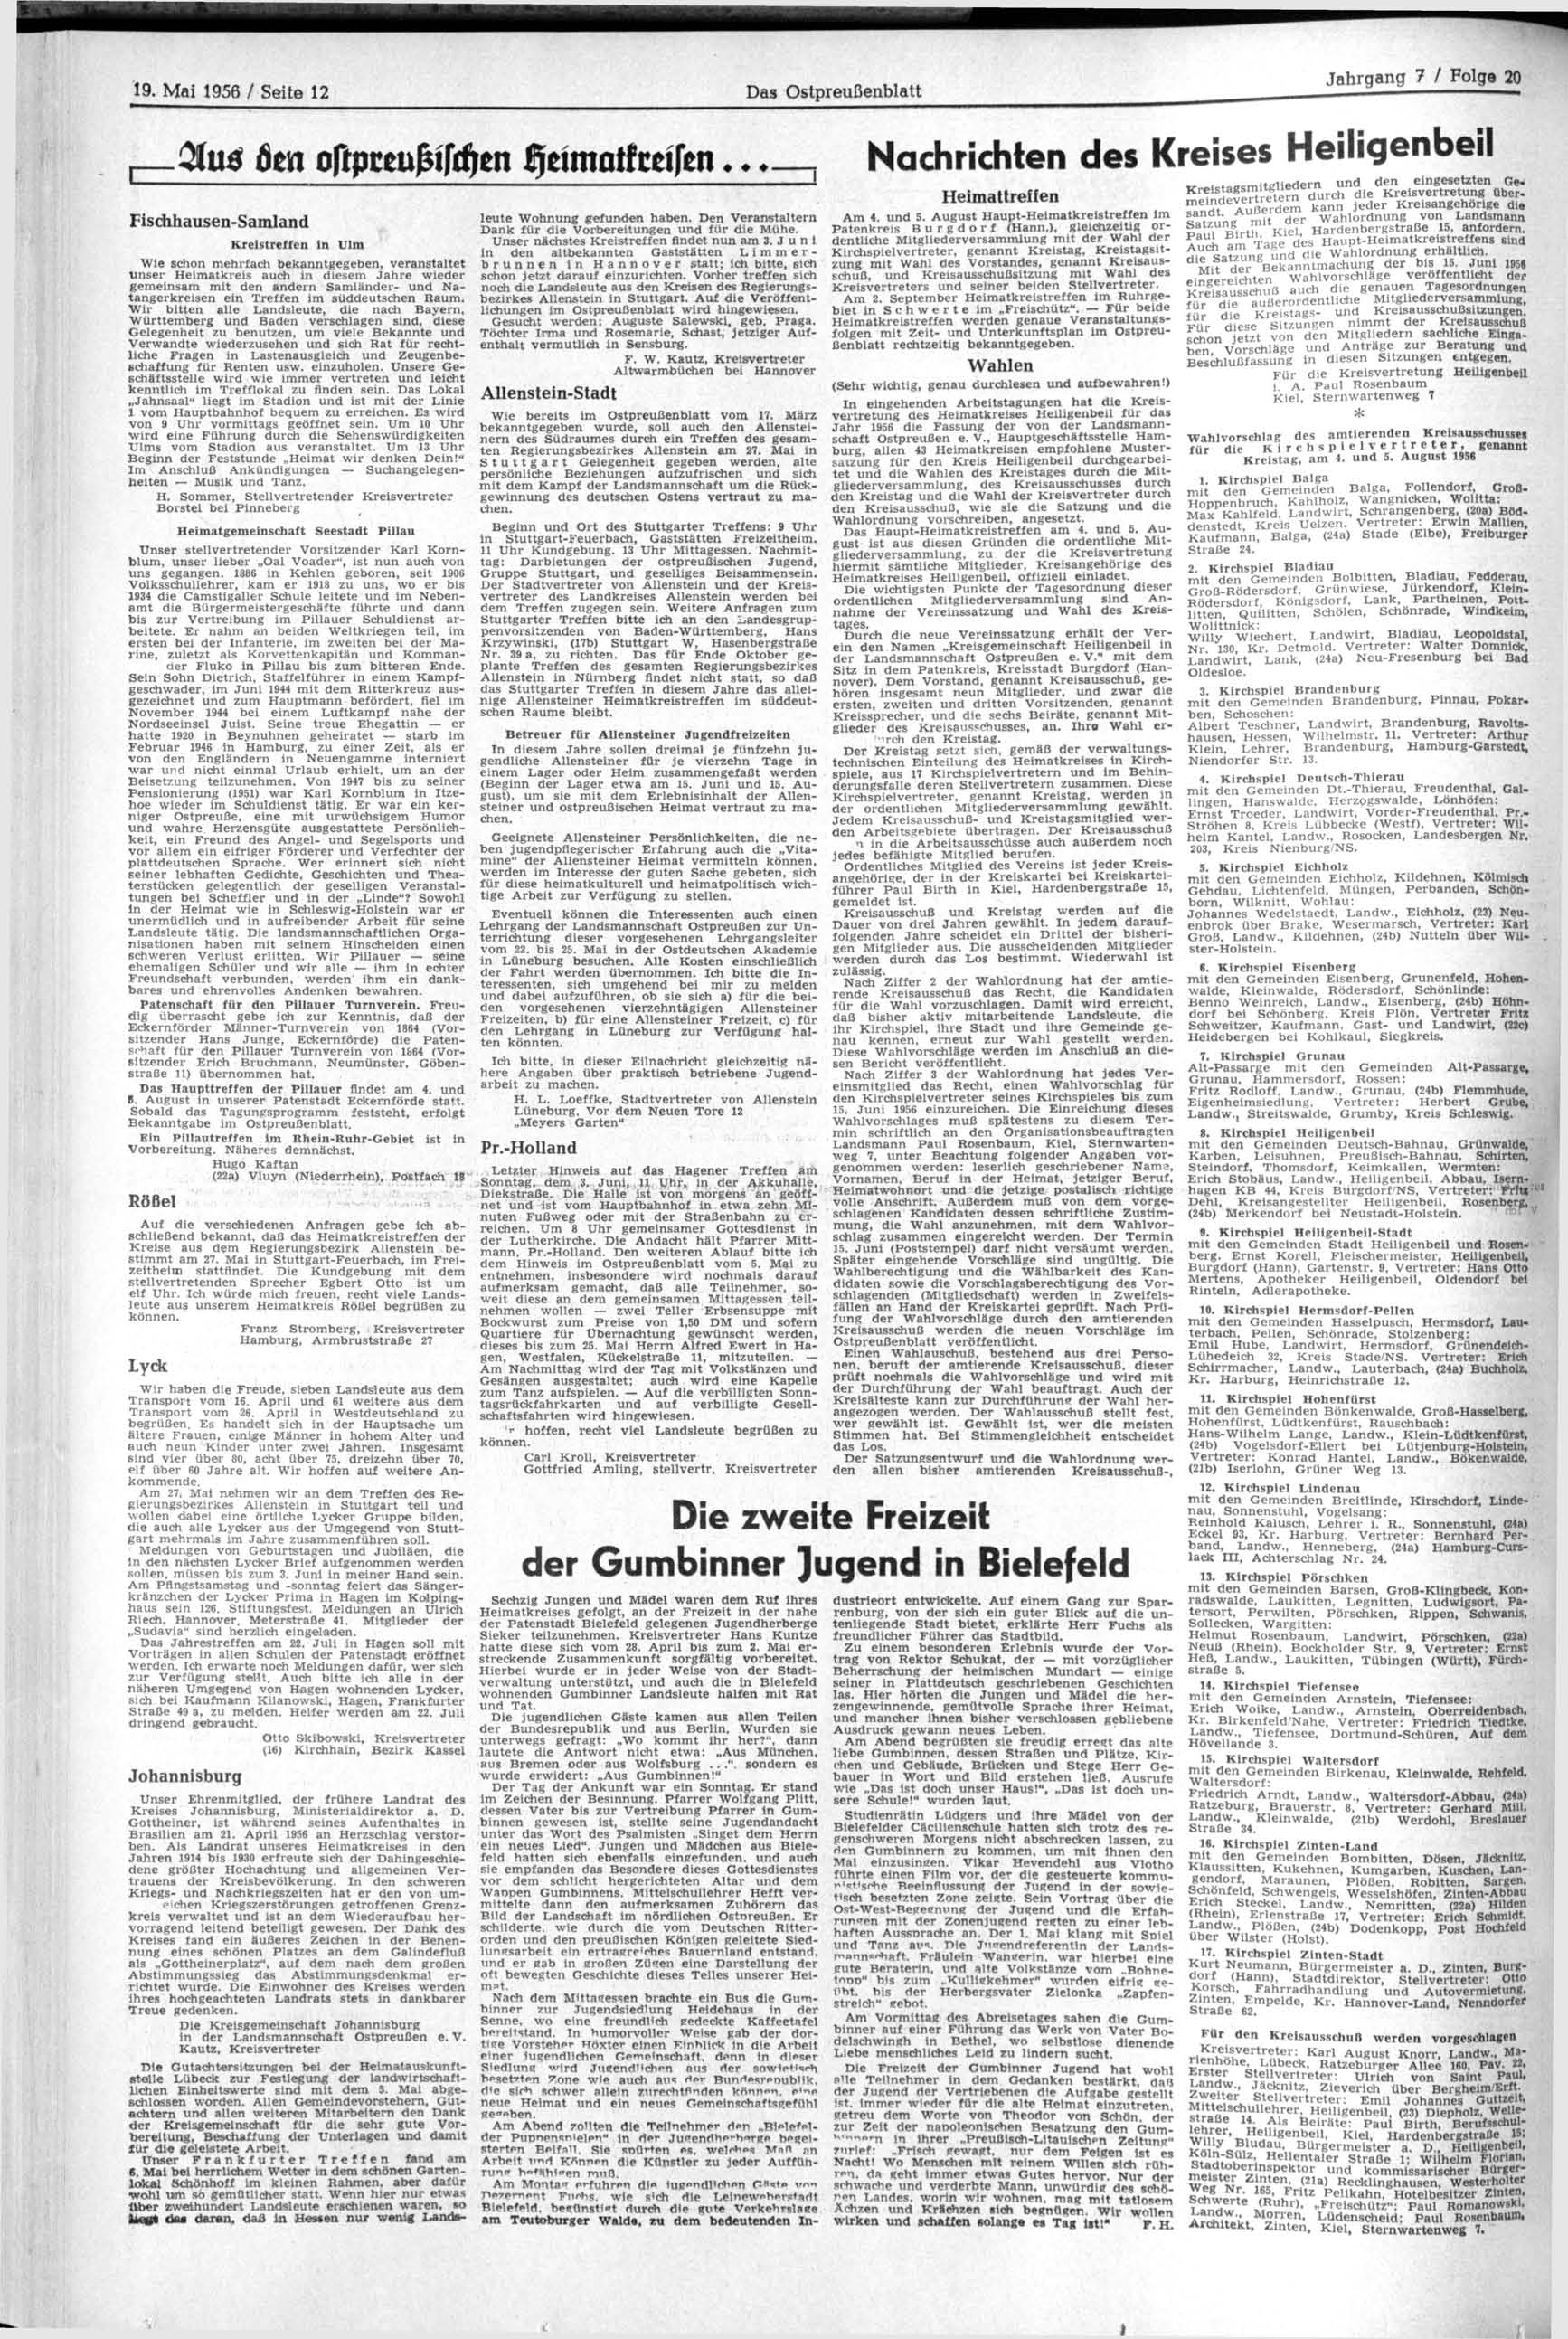 I 19. Mai 1956 / Seite 12 Das Ostpreußenblatt Clus 6m oftpzmfctfdftn Ijeimaifcrifen Nachrichten des Kreises Heiligenbeil Fischhausen-Samland Kreistreffen in Ulm Wie schon mehrfach bekanntgegeben,